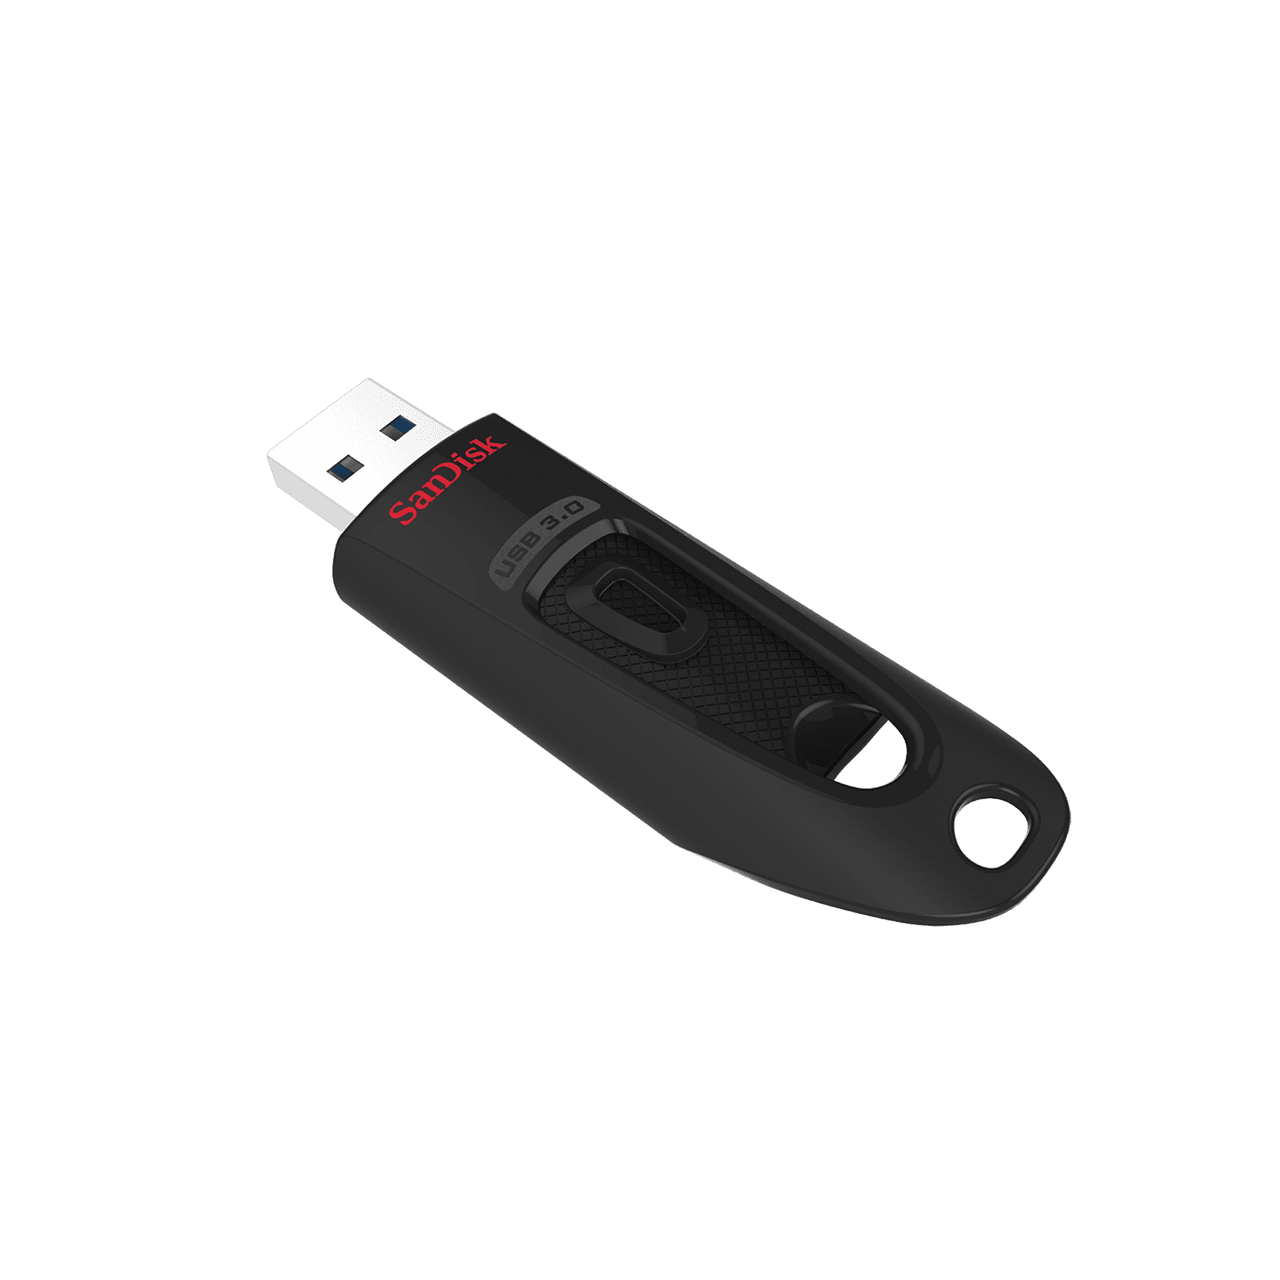 64GB SanDisk サンディスク USBメモリー Ultra Fit USB 3.1 Gen1対応 R:130MB s 超小型設計 ブラック 海外リテール SDCZ430-064G-G46 ◆メ